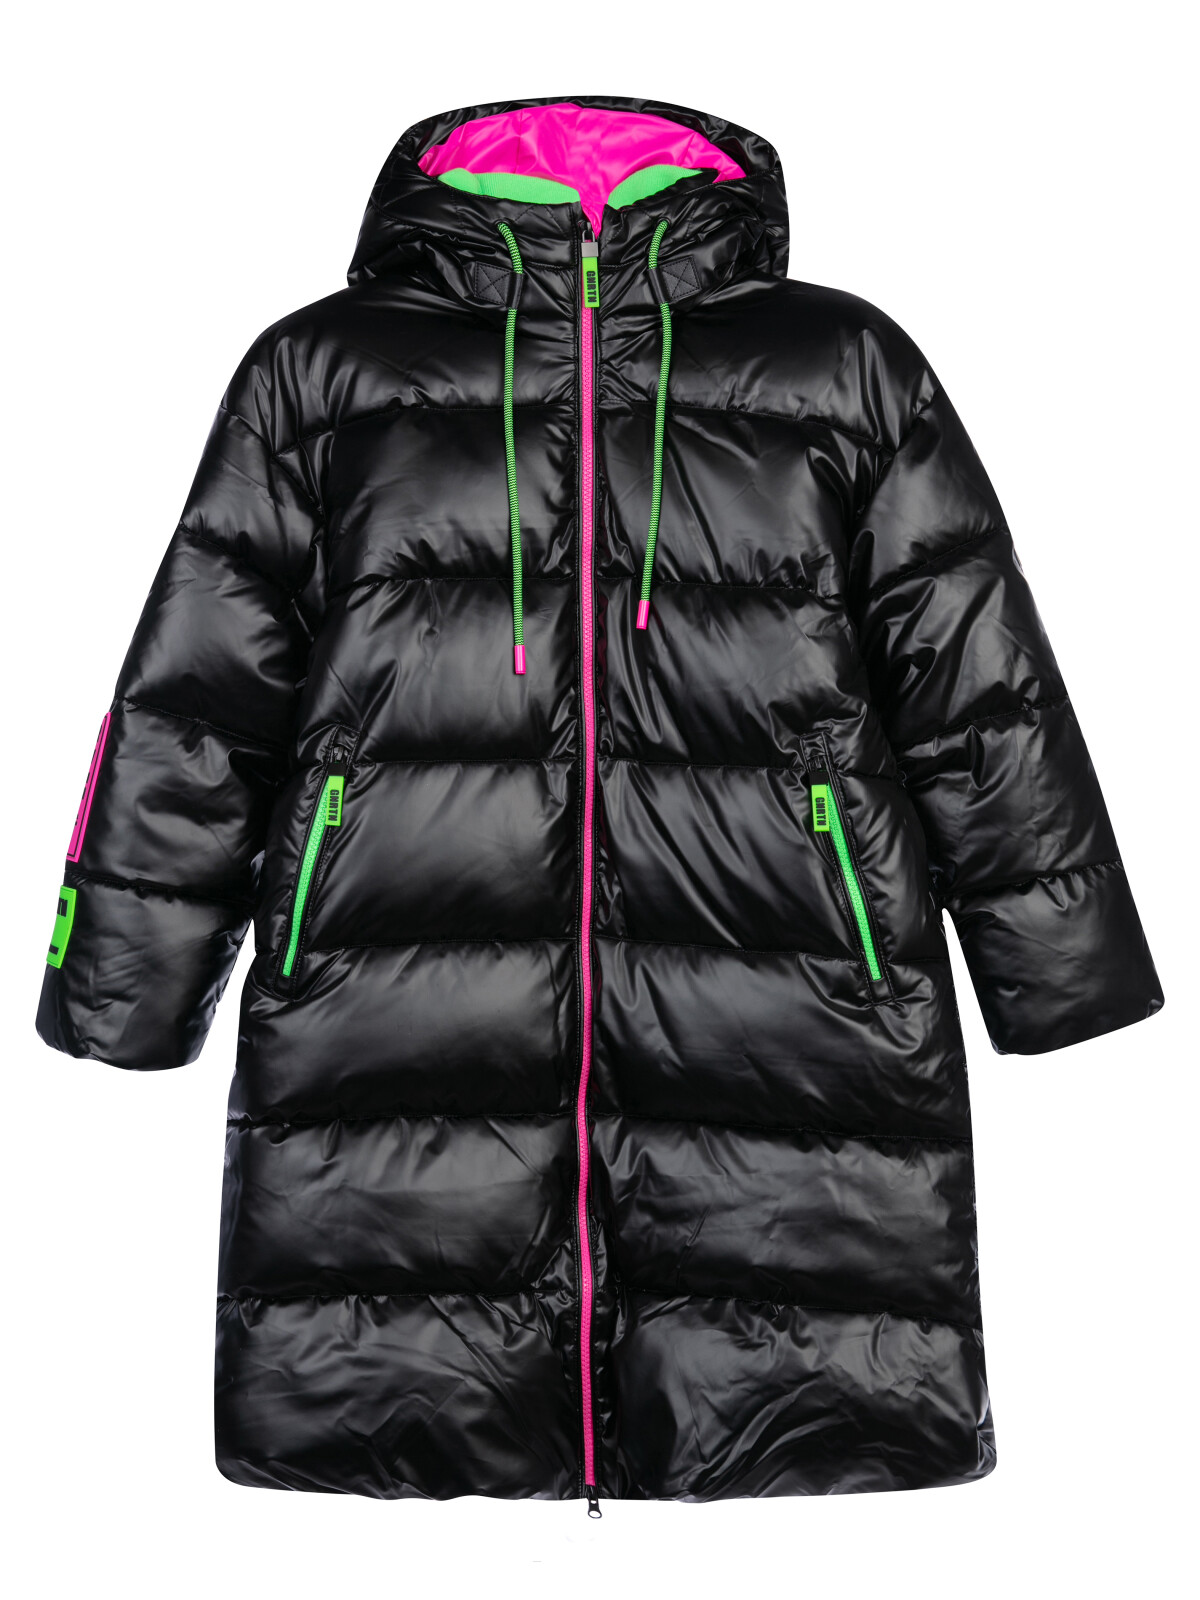 Пальто текстильное с полиуретановым покрытием для девочек PlayToday, черный,цветной, 146